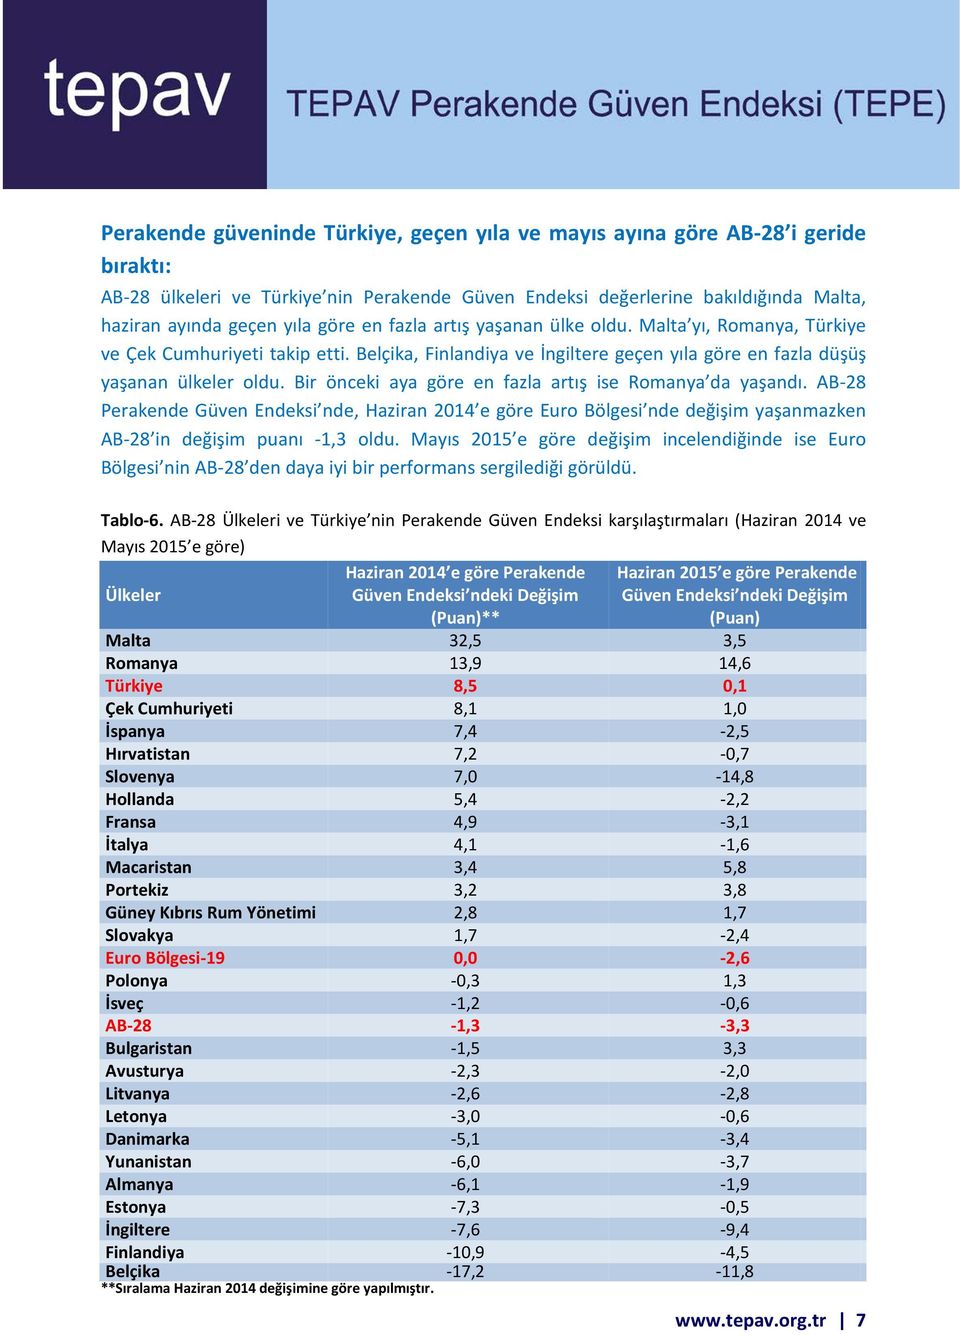 Bir önceki aya göre en fazla artış ise Romanya da yaşandı. AB-28 Perakende Güven Endeksi nde, Haziran 2014 e göre Euro Bölgesi nde değişim yaşanmazken AB-28 in değişim puanı -1,3 oldu.